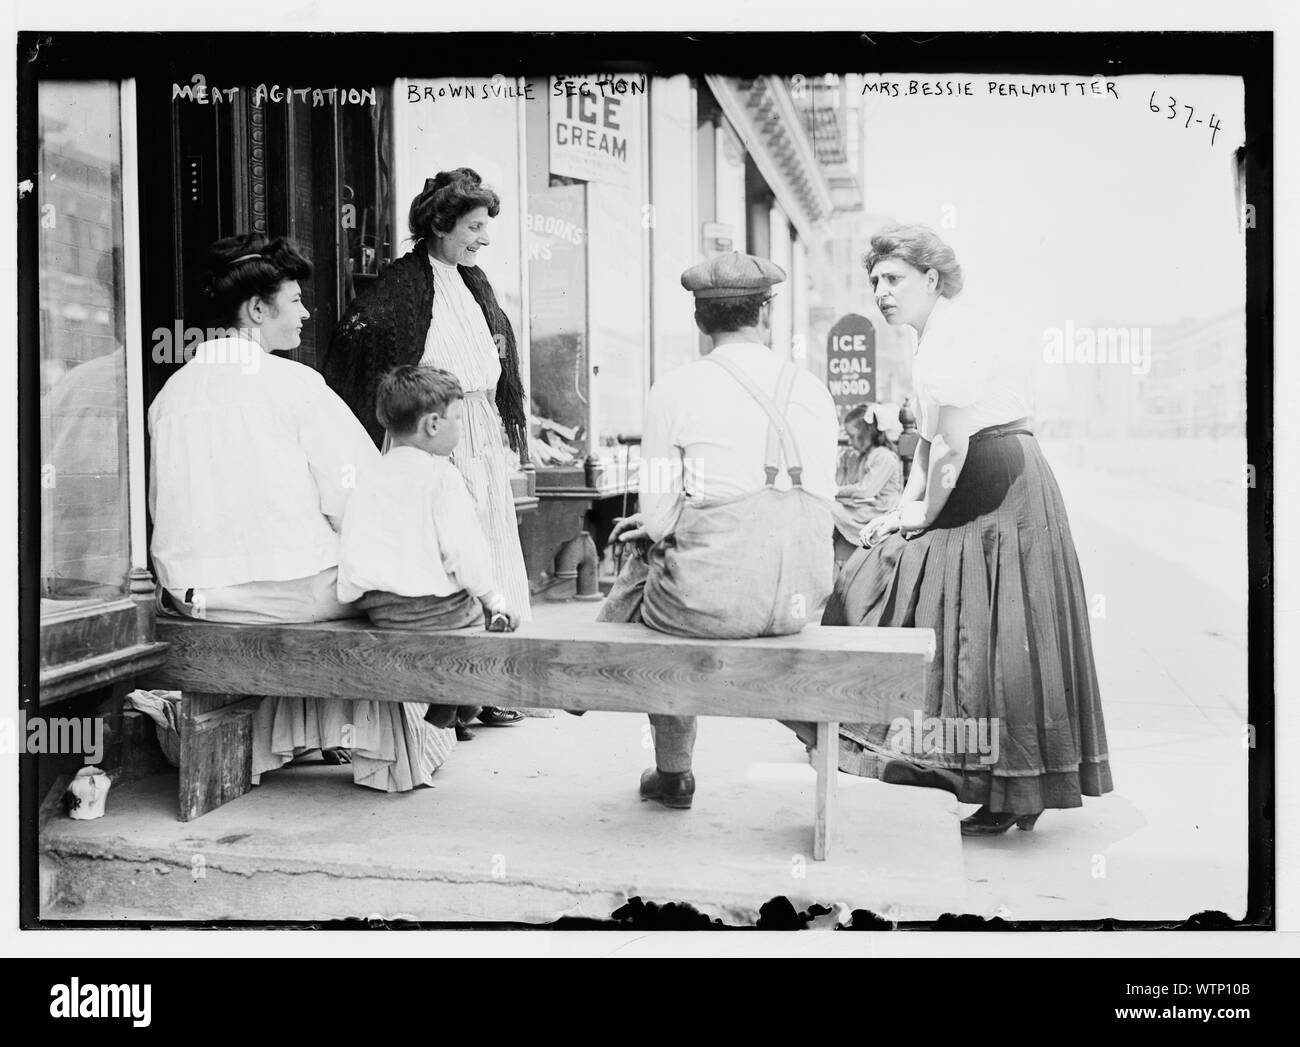 La sig.ra Bessie Perlmutter ha e altri al di fuori del negozio di carne, agitazione, New York, Brownsville Sezione Foto Stock